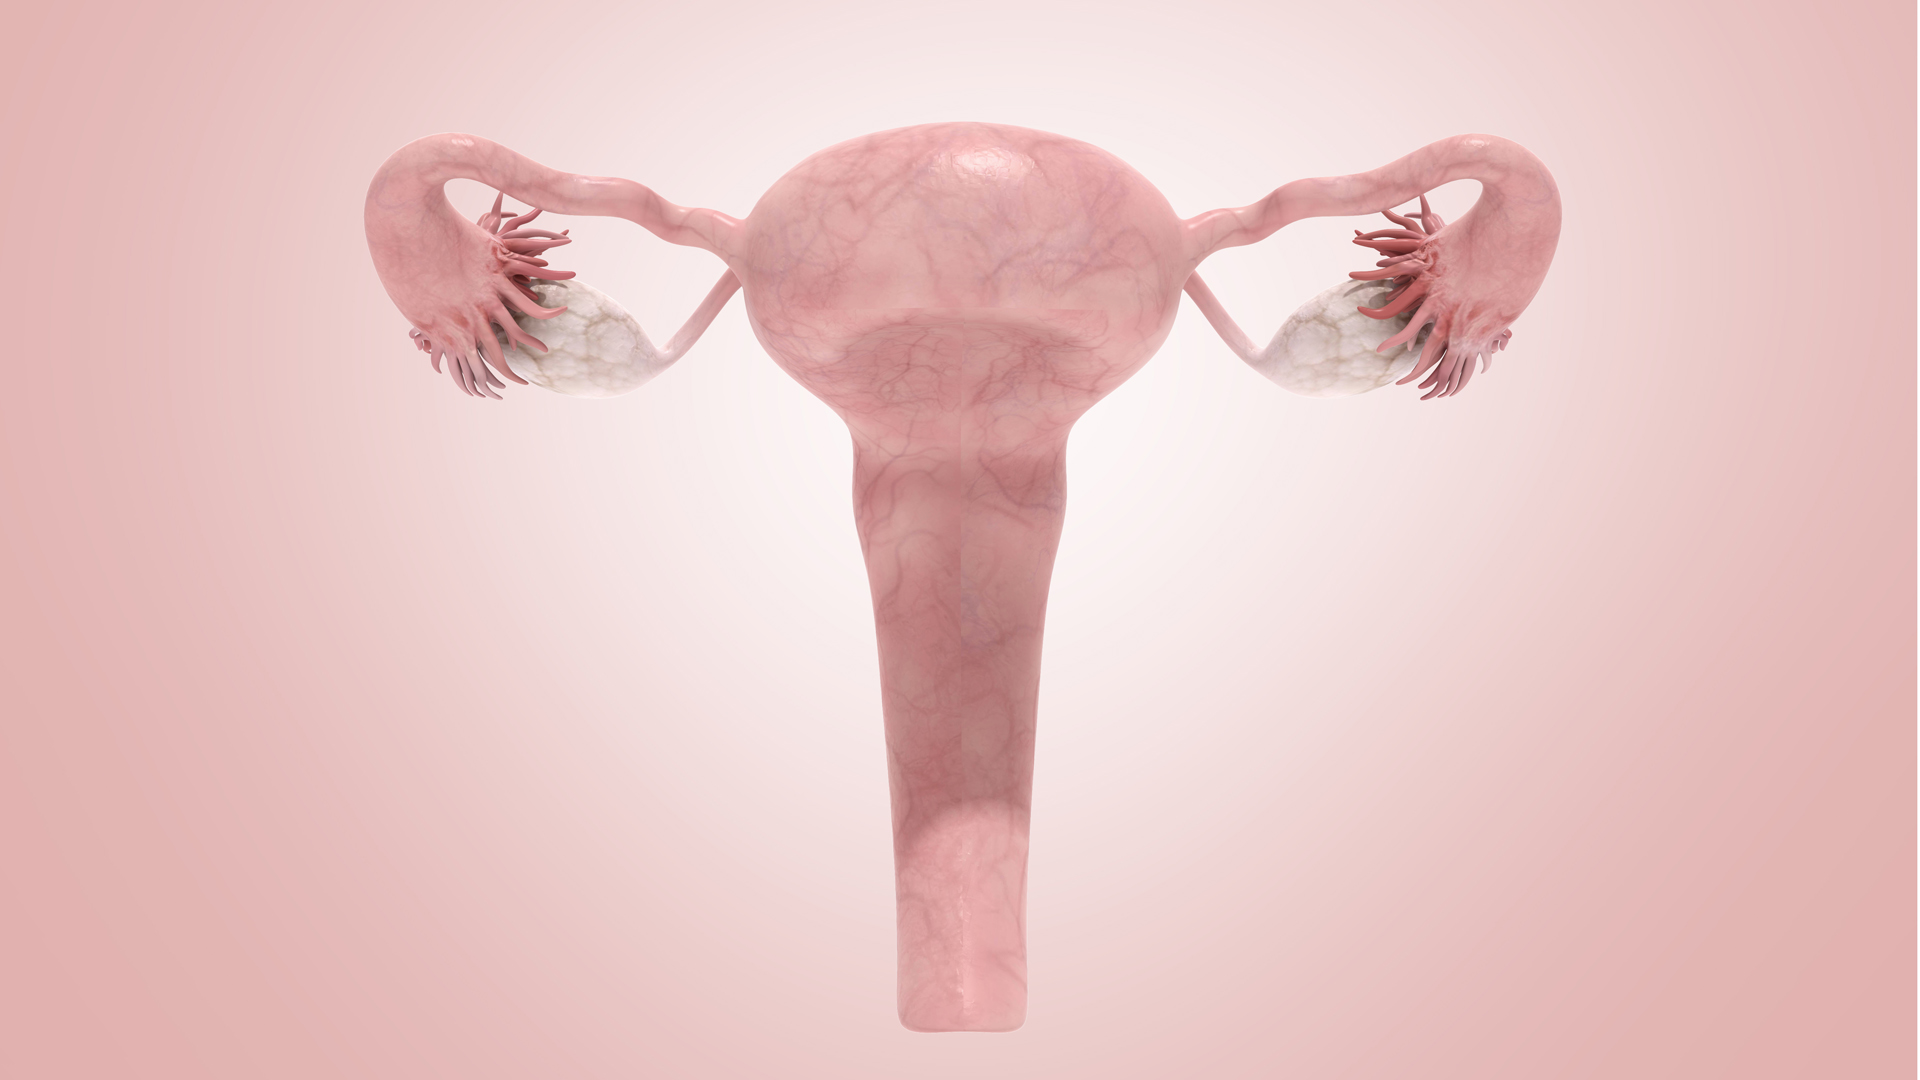 La histerectomía es la cirugía en la cual se extirpa el útero, puede ser realizada mediante cirugía laparoscópica, cirugía convencional o cirugía vaginal (Getty Images)